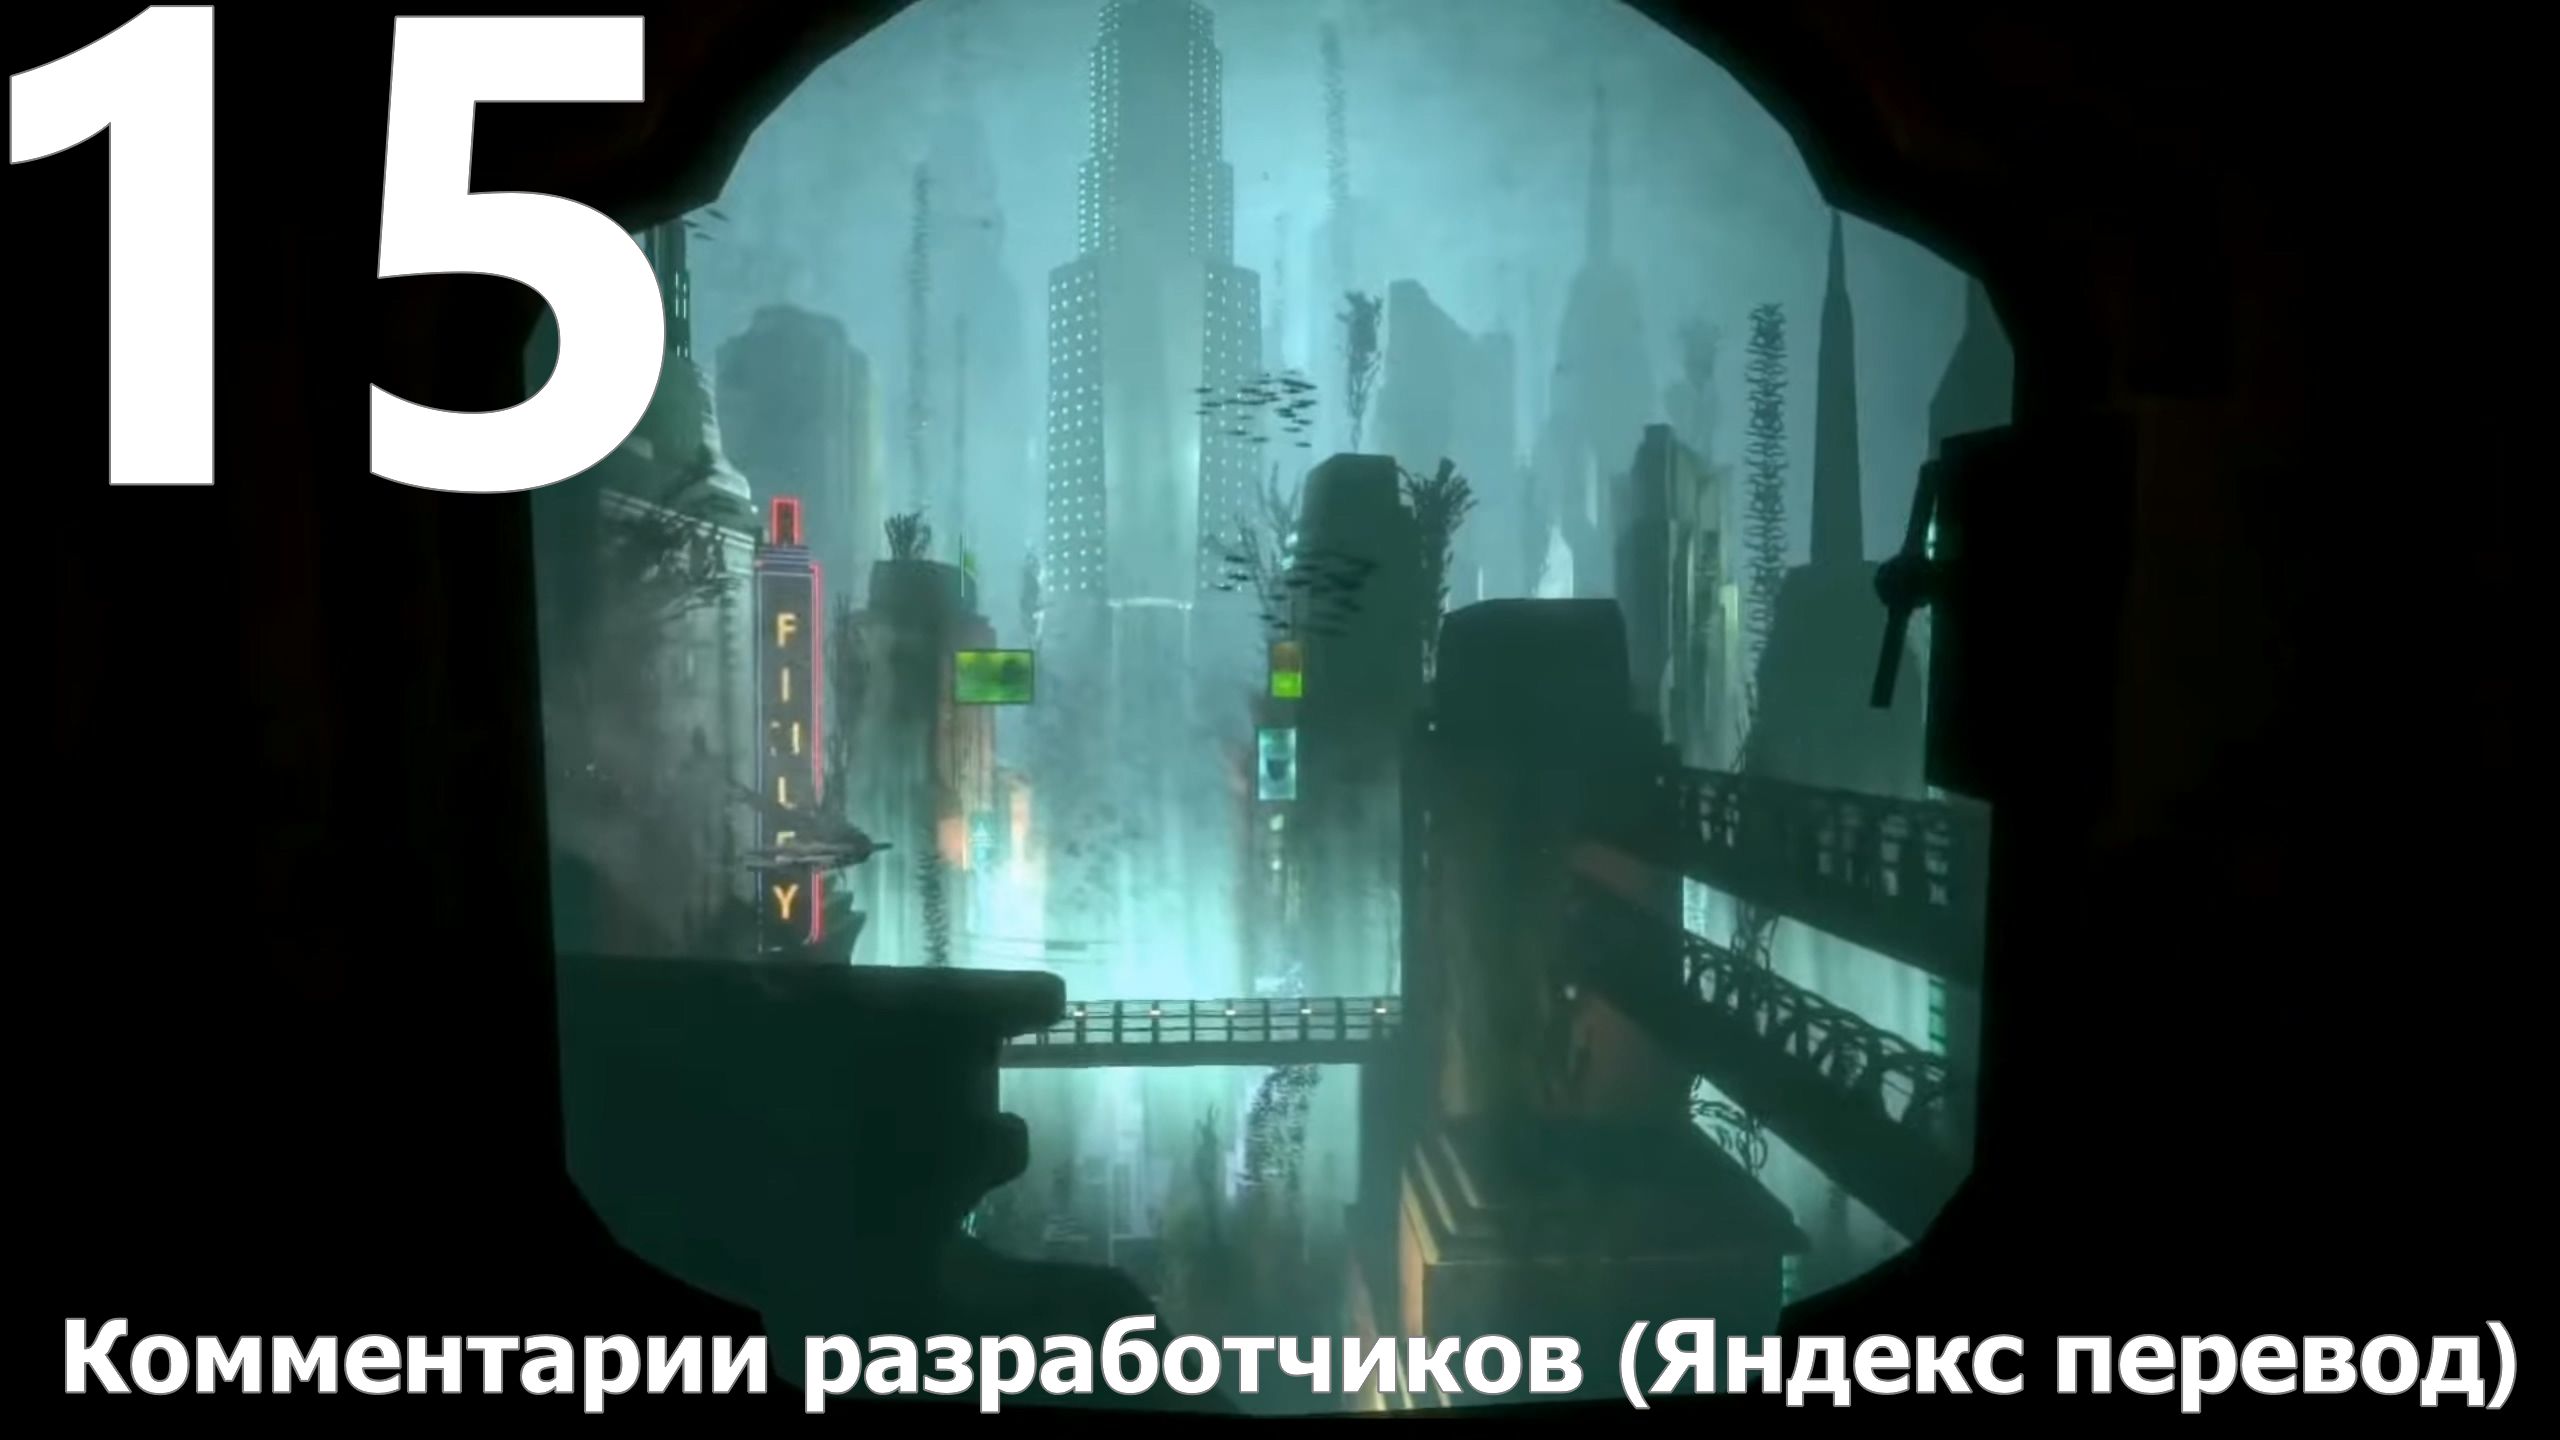 Прохождение игры BioShock Remastered №15 - Комментарии разработчиков (Яндекс перевод)